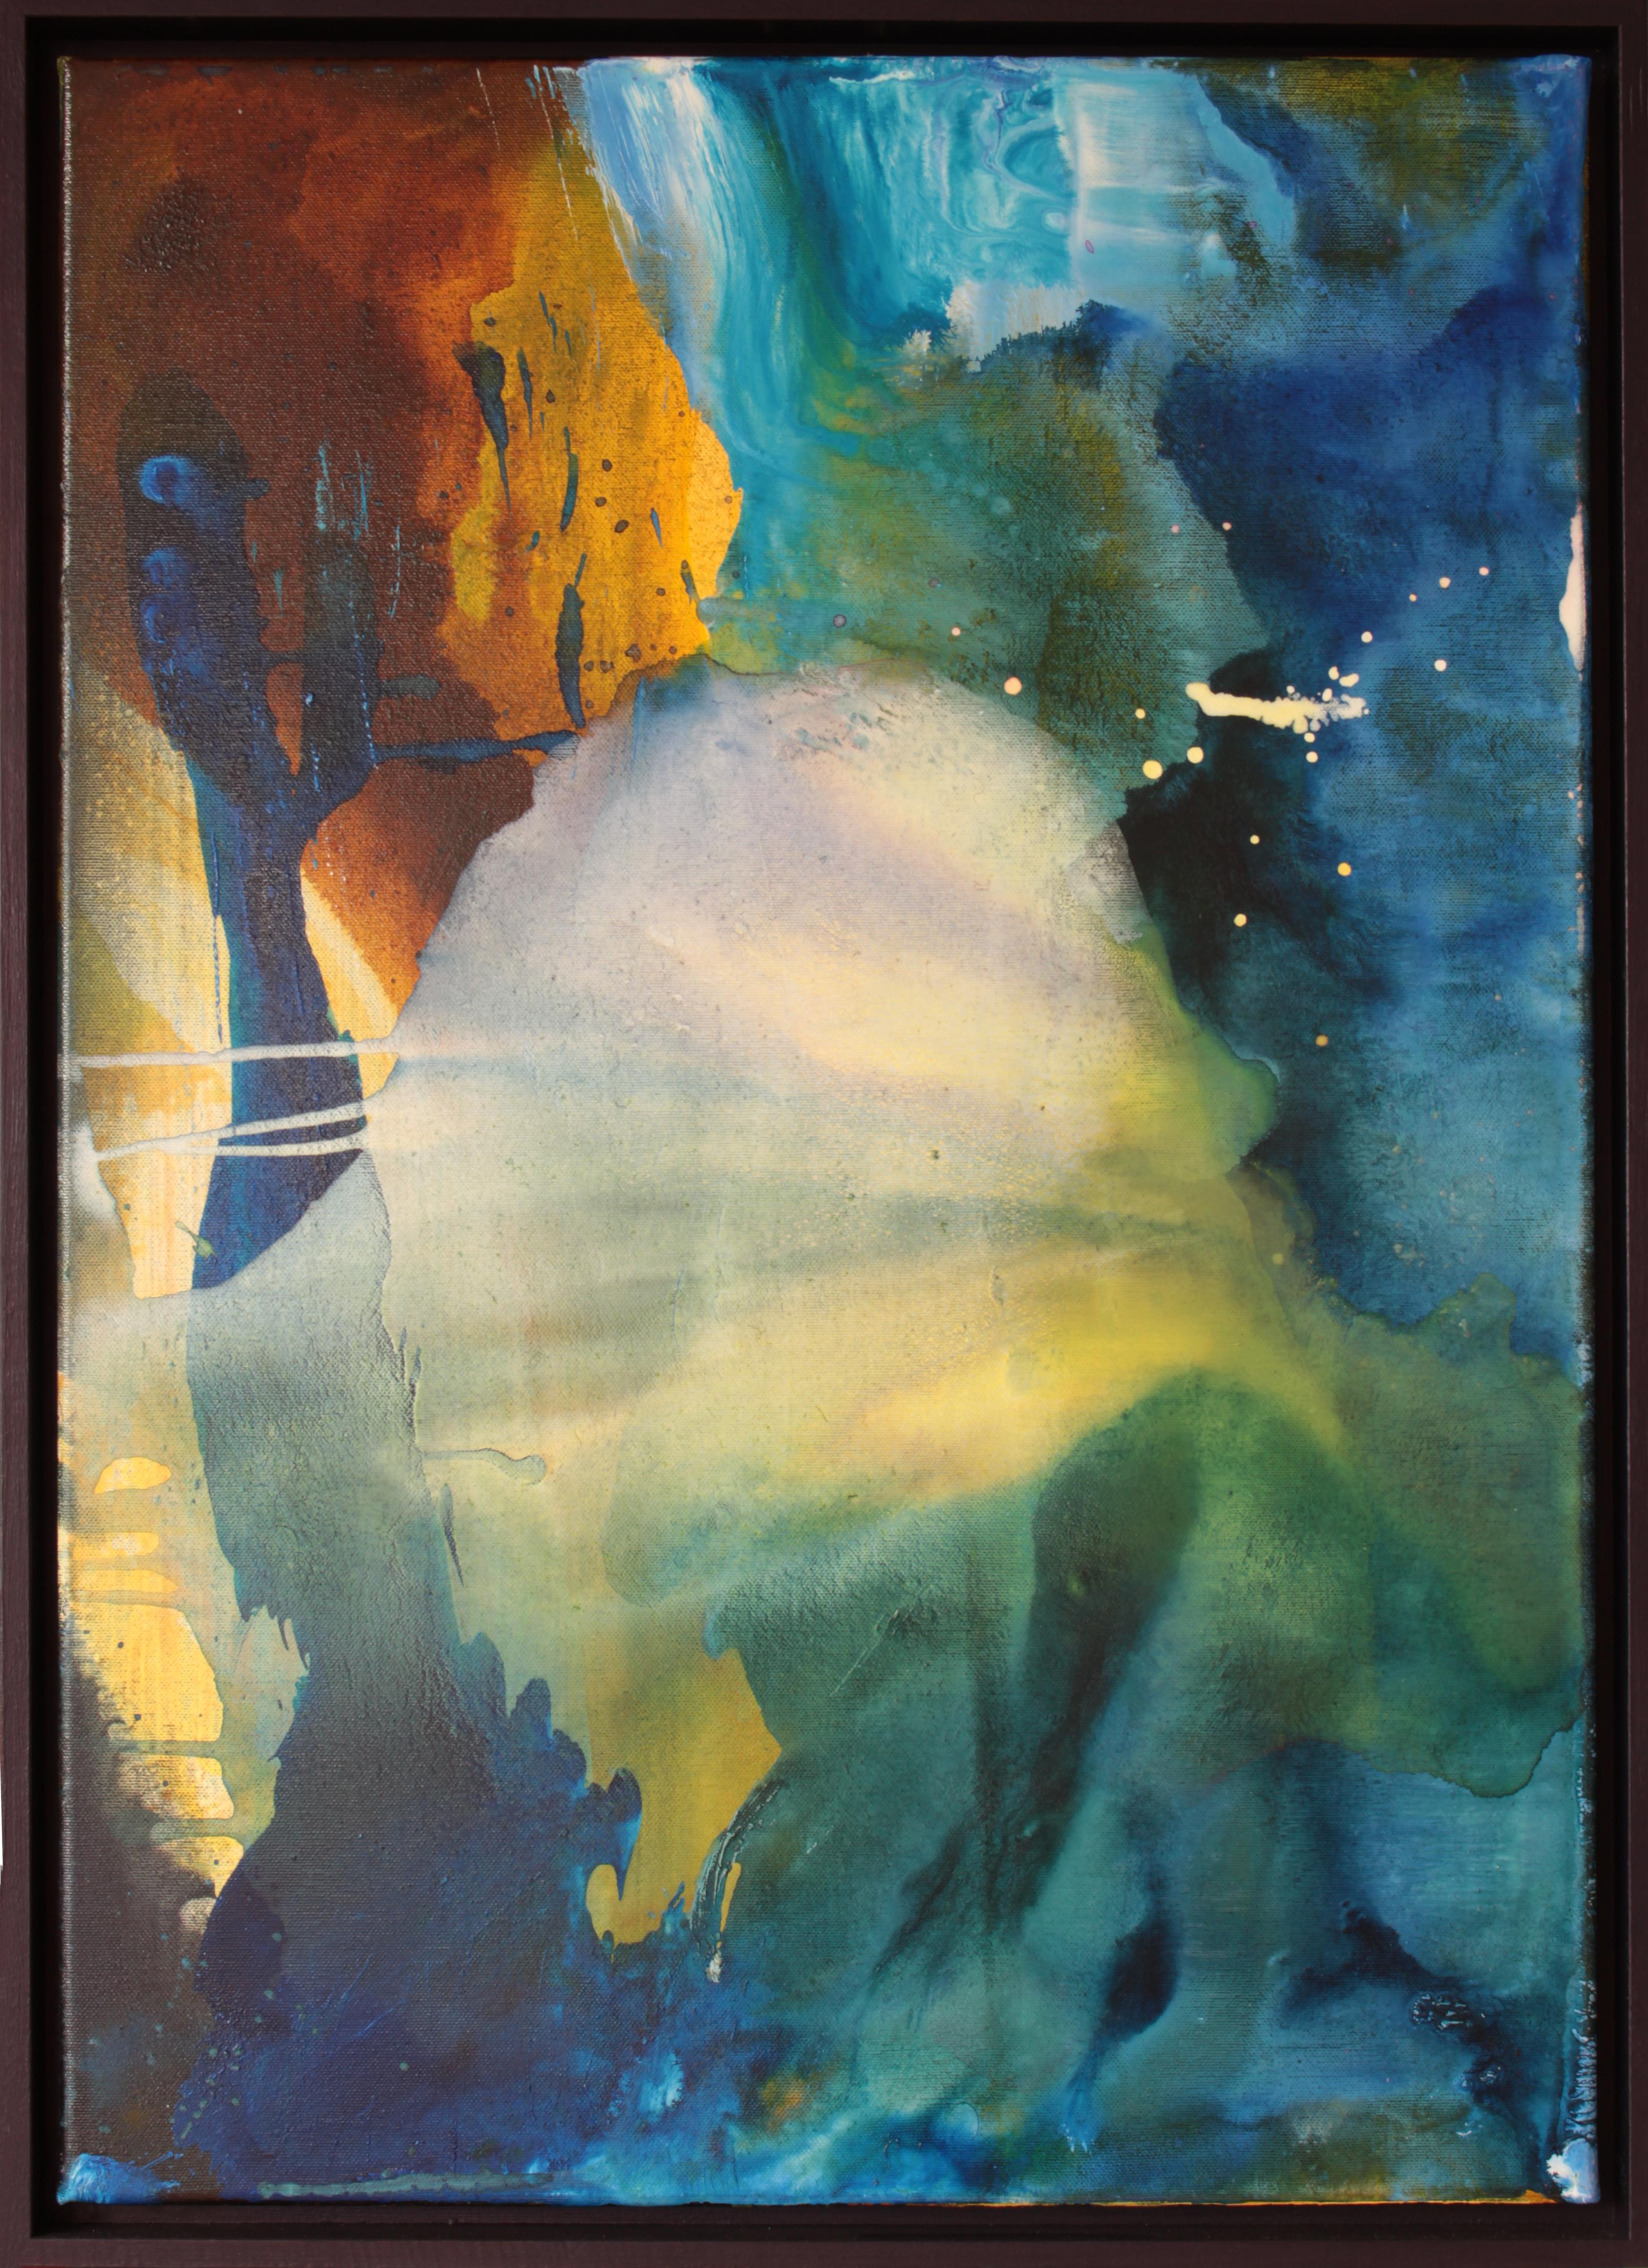 Acrylfarbe auf Leinwand, 2016. Verso signiert, datiert und betitelt. Gerahmt. Es kommt direkt aus dem Atelier des Künstlers.
Höhe: 74,5 cm (29.33 Zoll), Breite: 54 cm (21.26 Zoll), Tiefe: 3,5 cm (1.38 Zoll)

Udo Haderlein wurde 1976 in Bamberg,